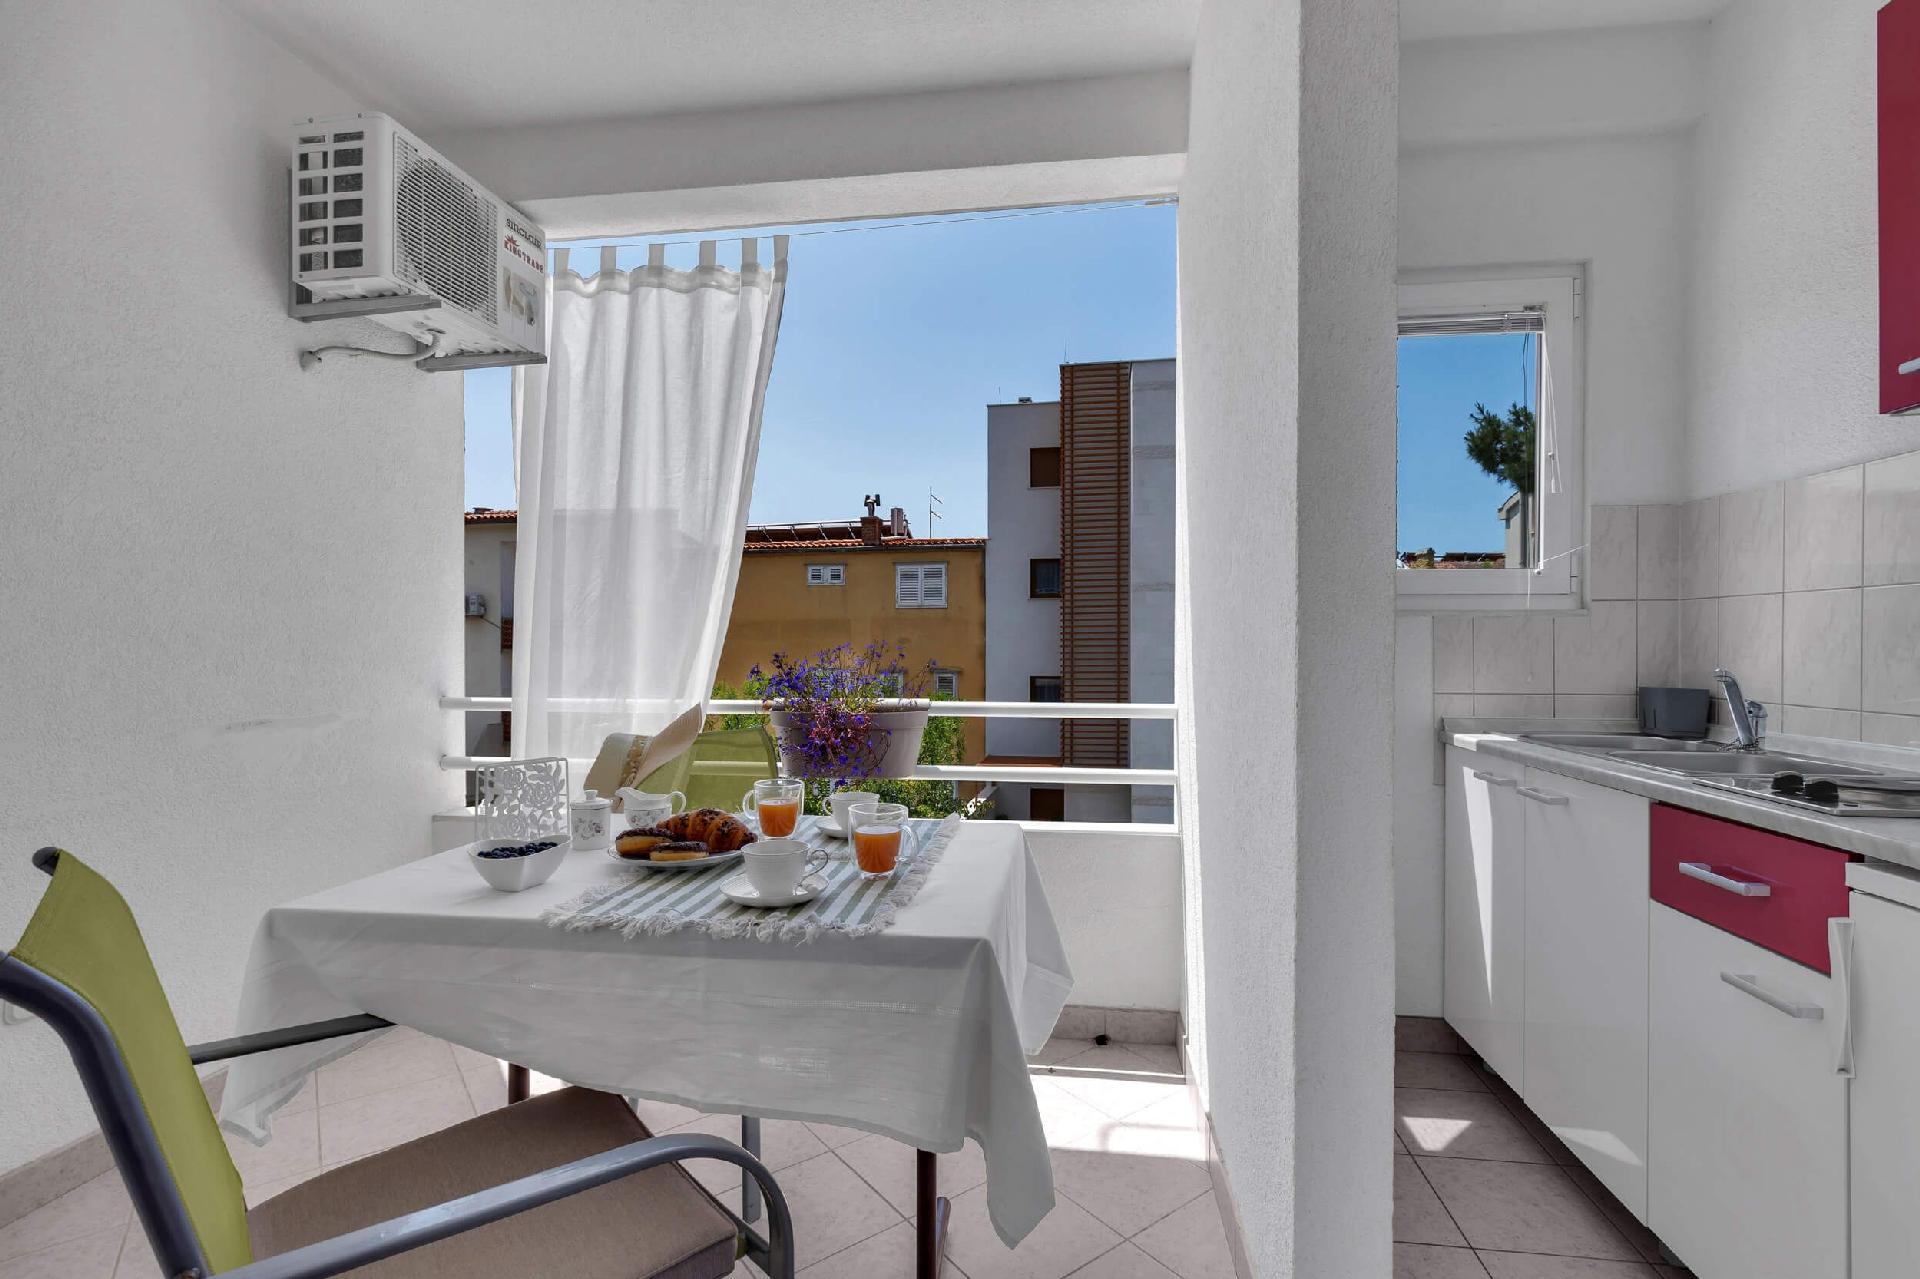 Ferienwohnung für 3 Personen ca. 25 m² i Ferienhaus in Kroatien